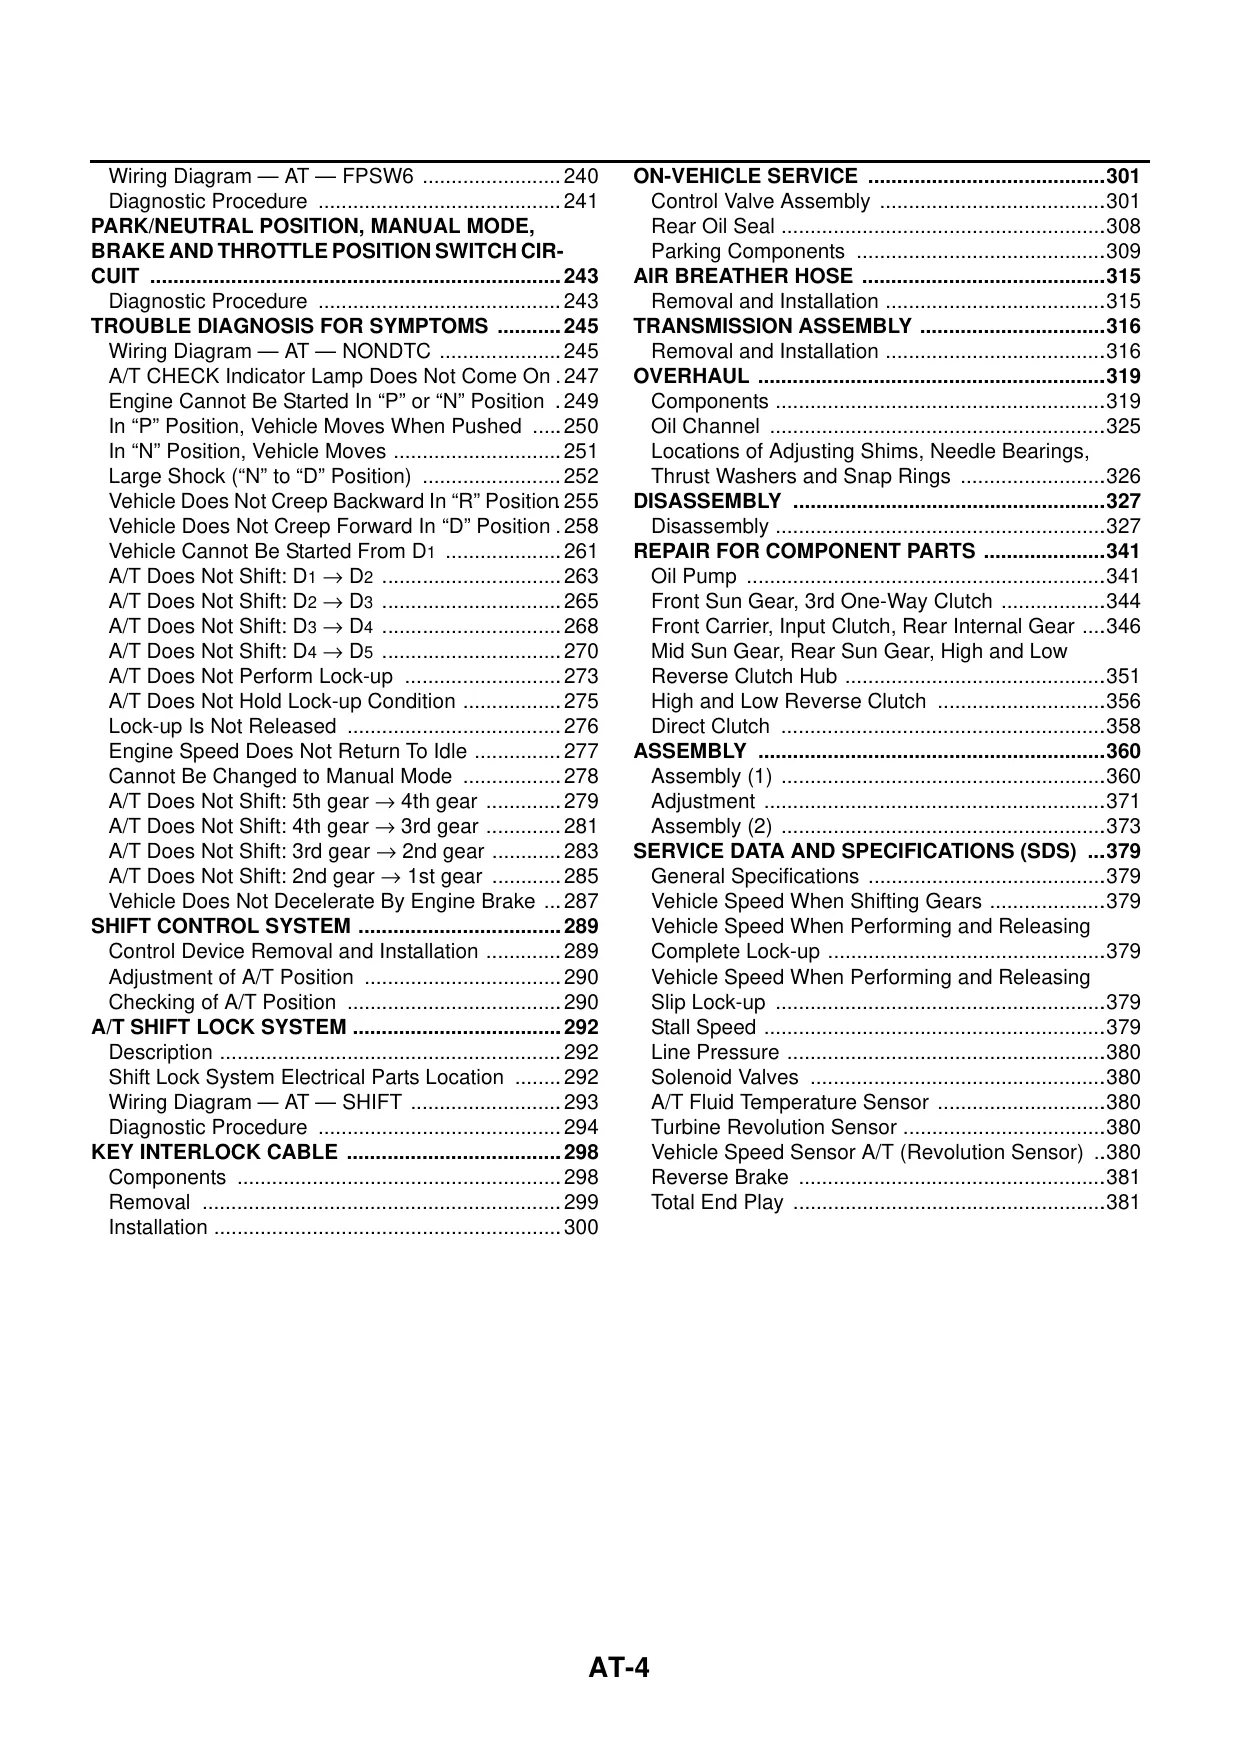 2004 Infiniti G35 repair manual Preview image 4